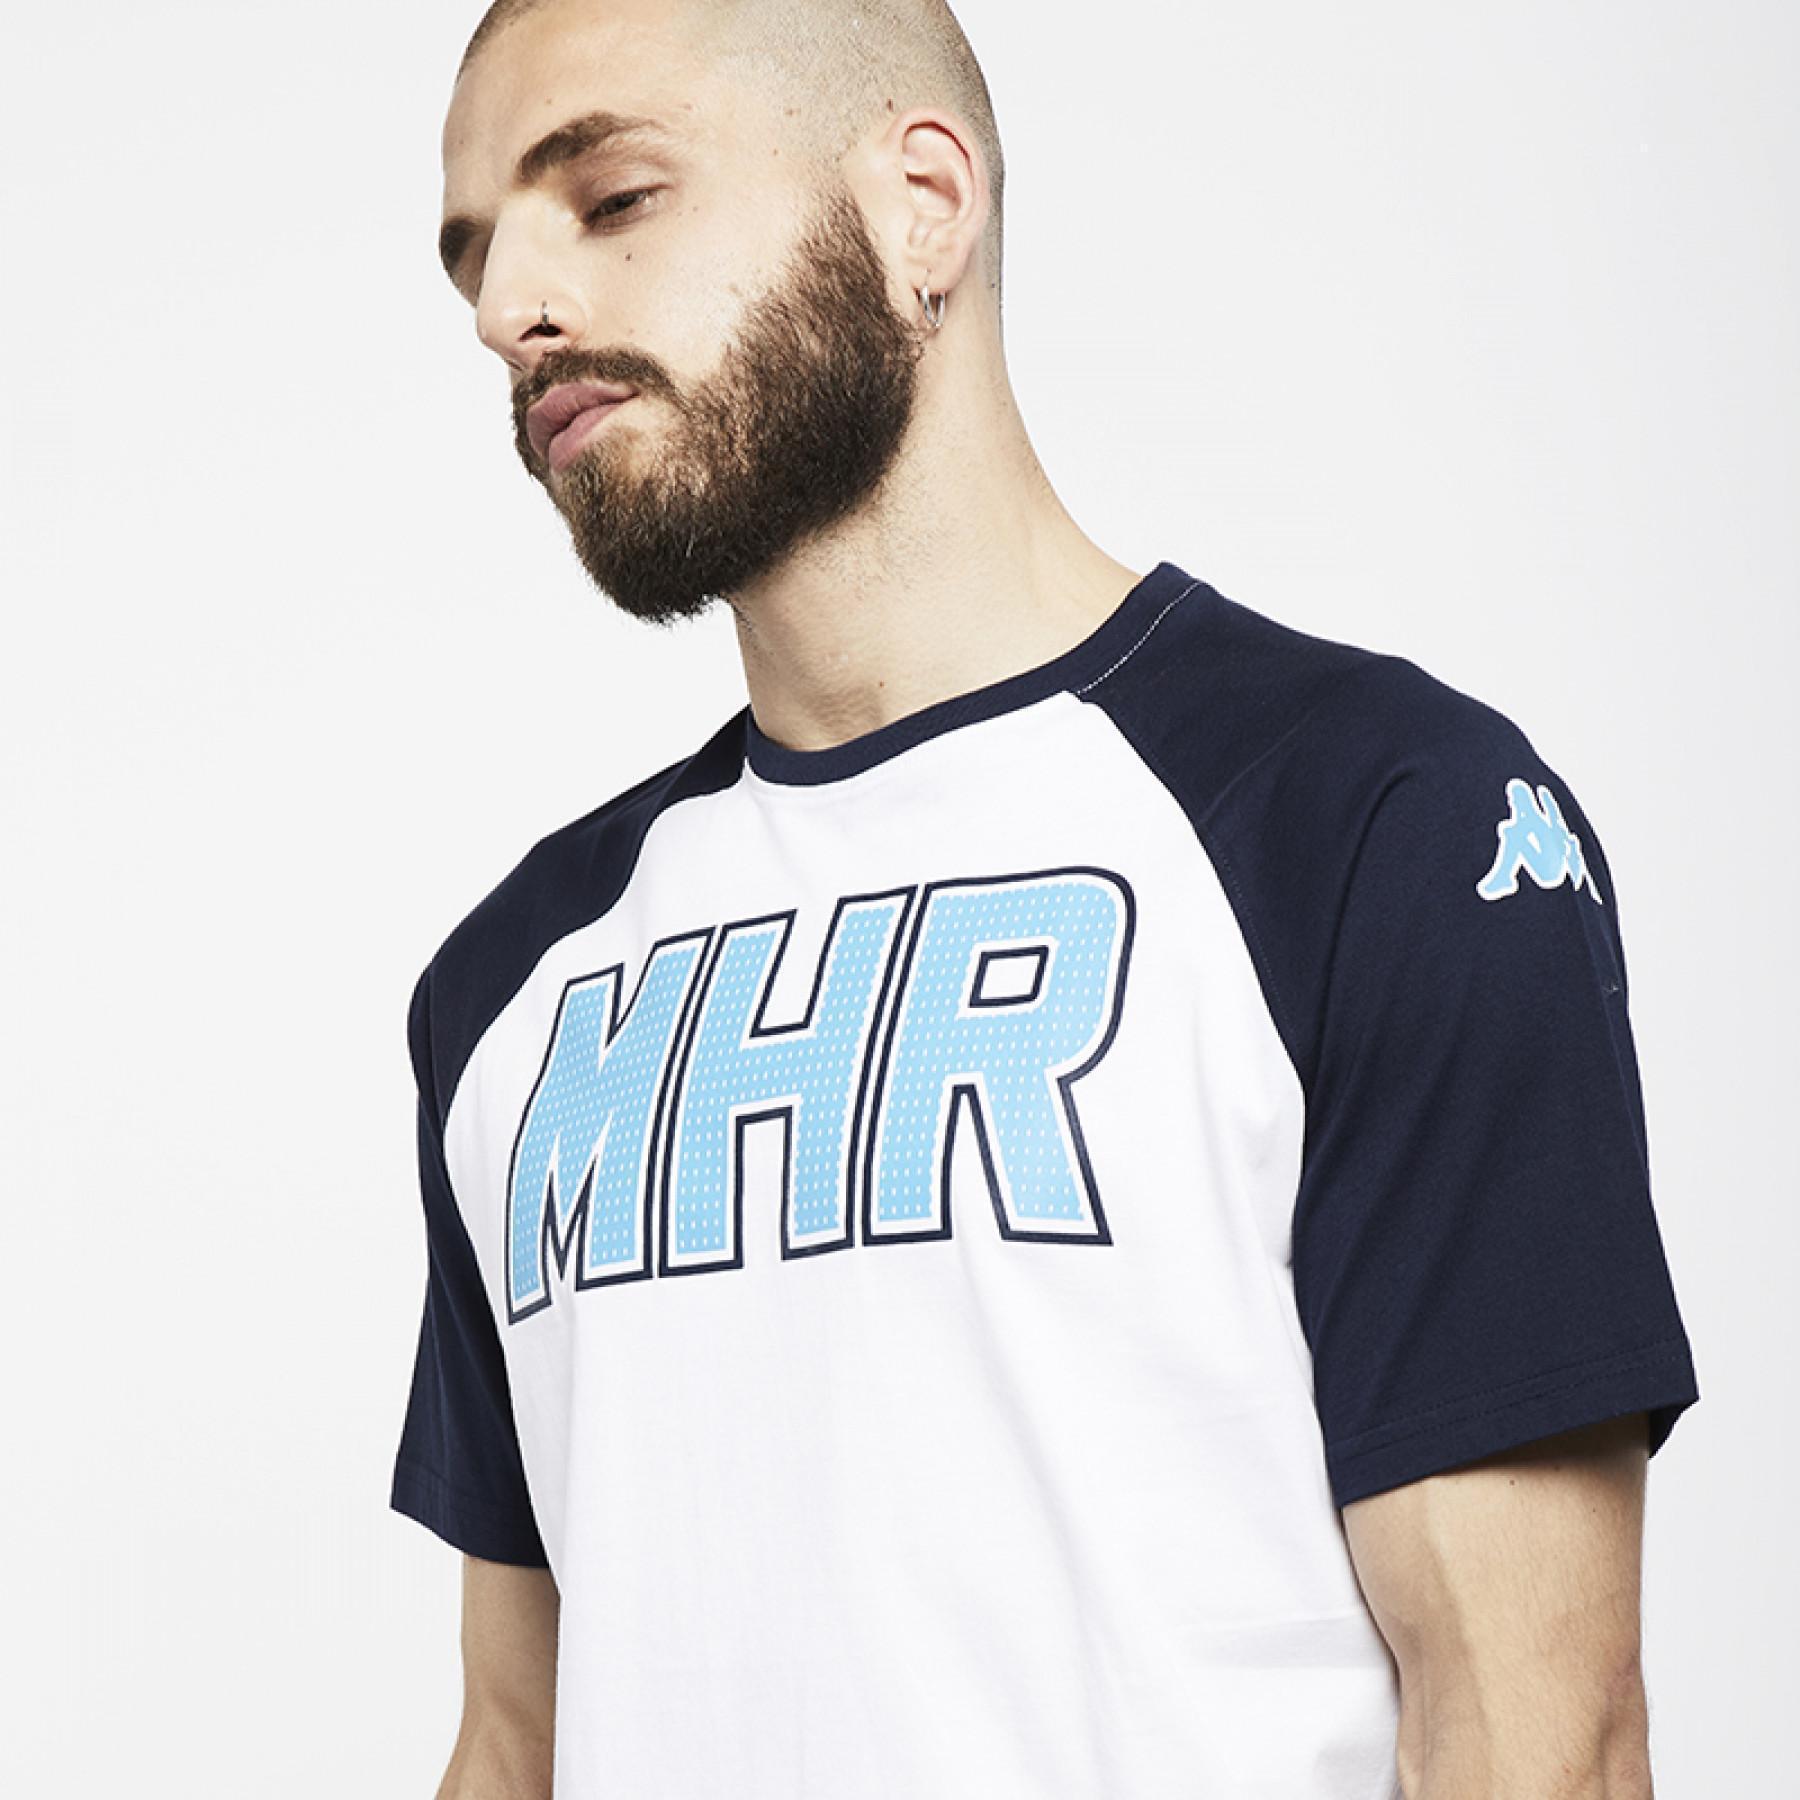 montpellier T-shirt MHR 2018/19